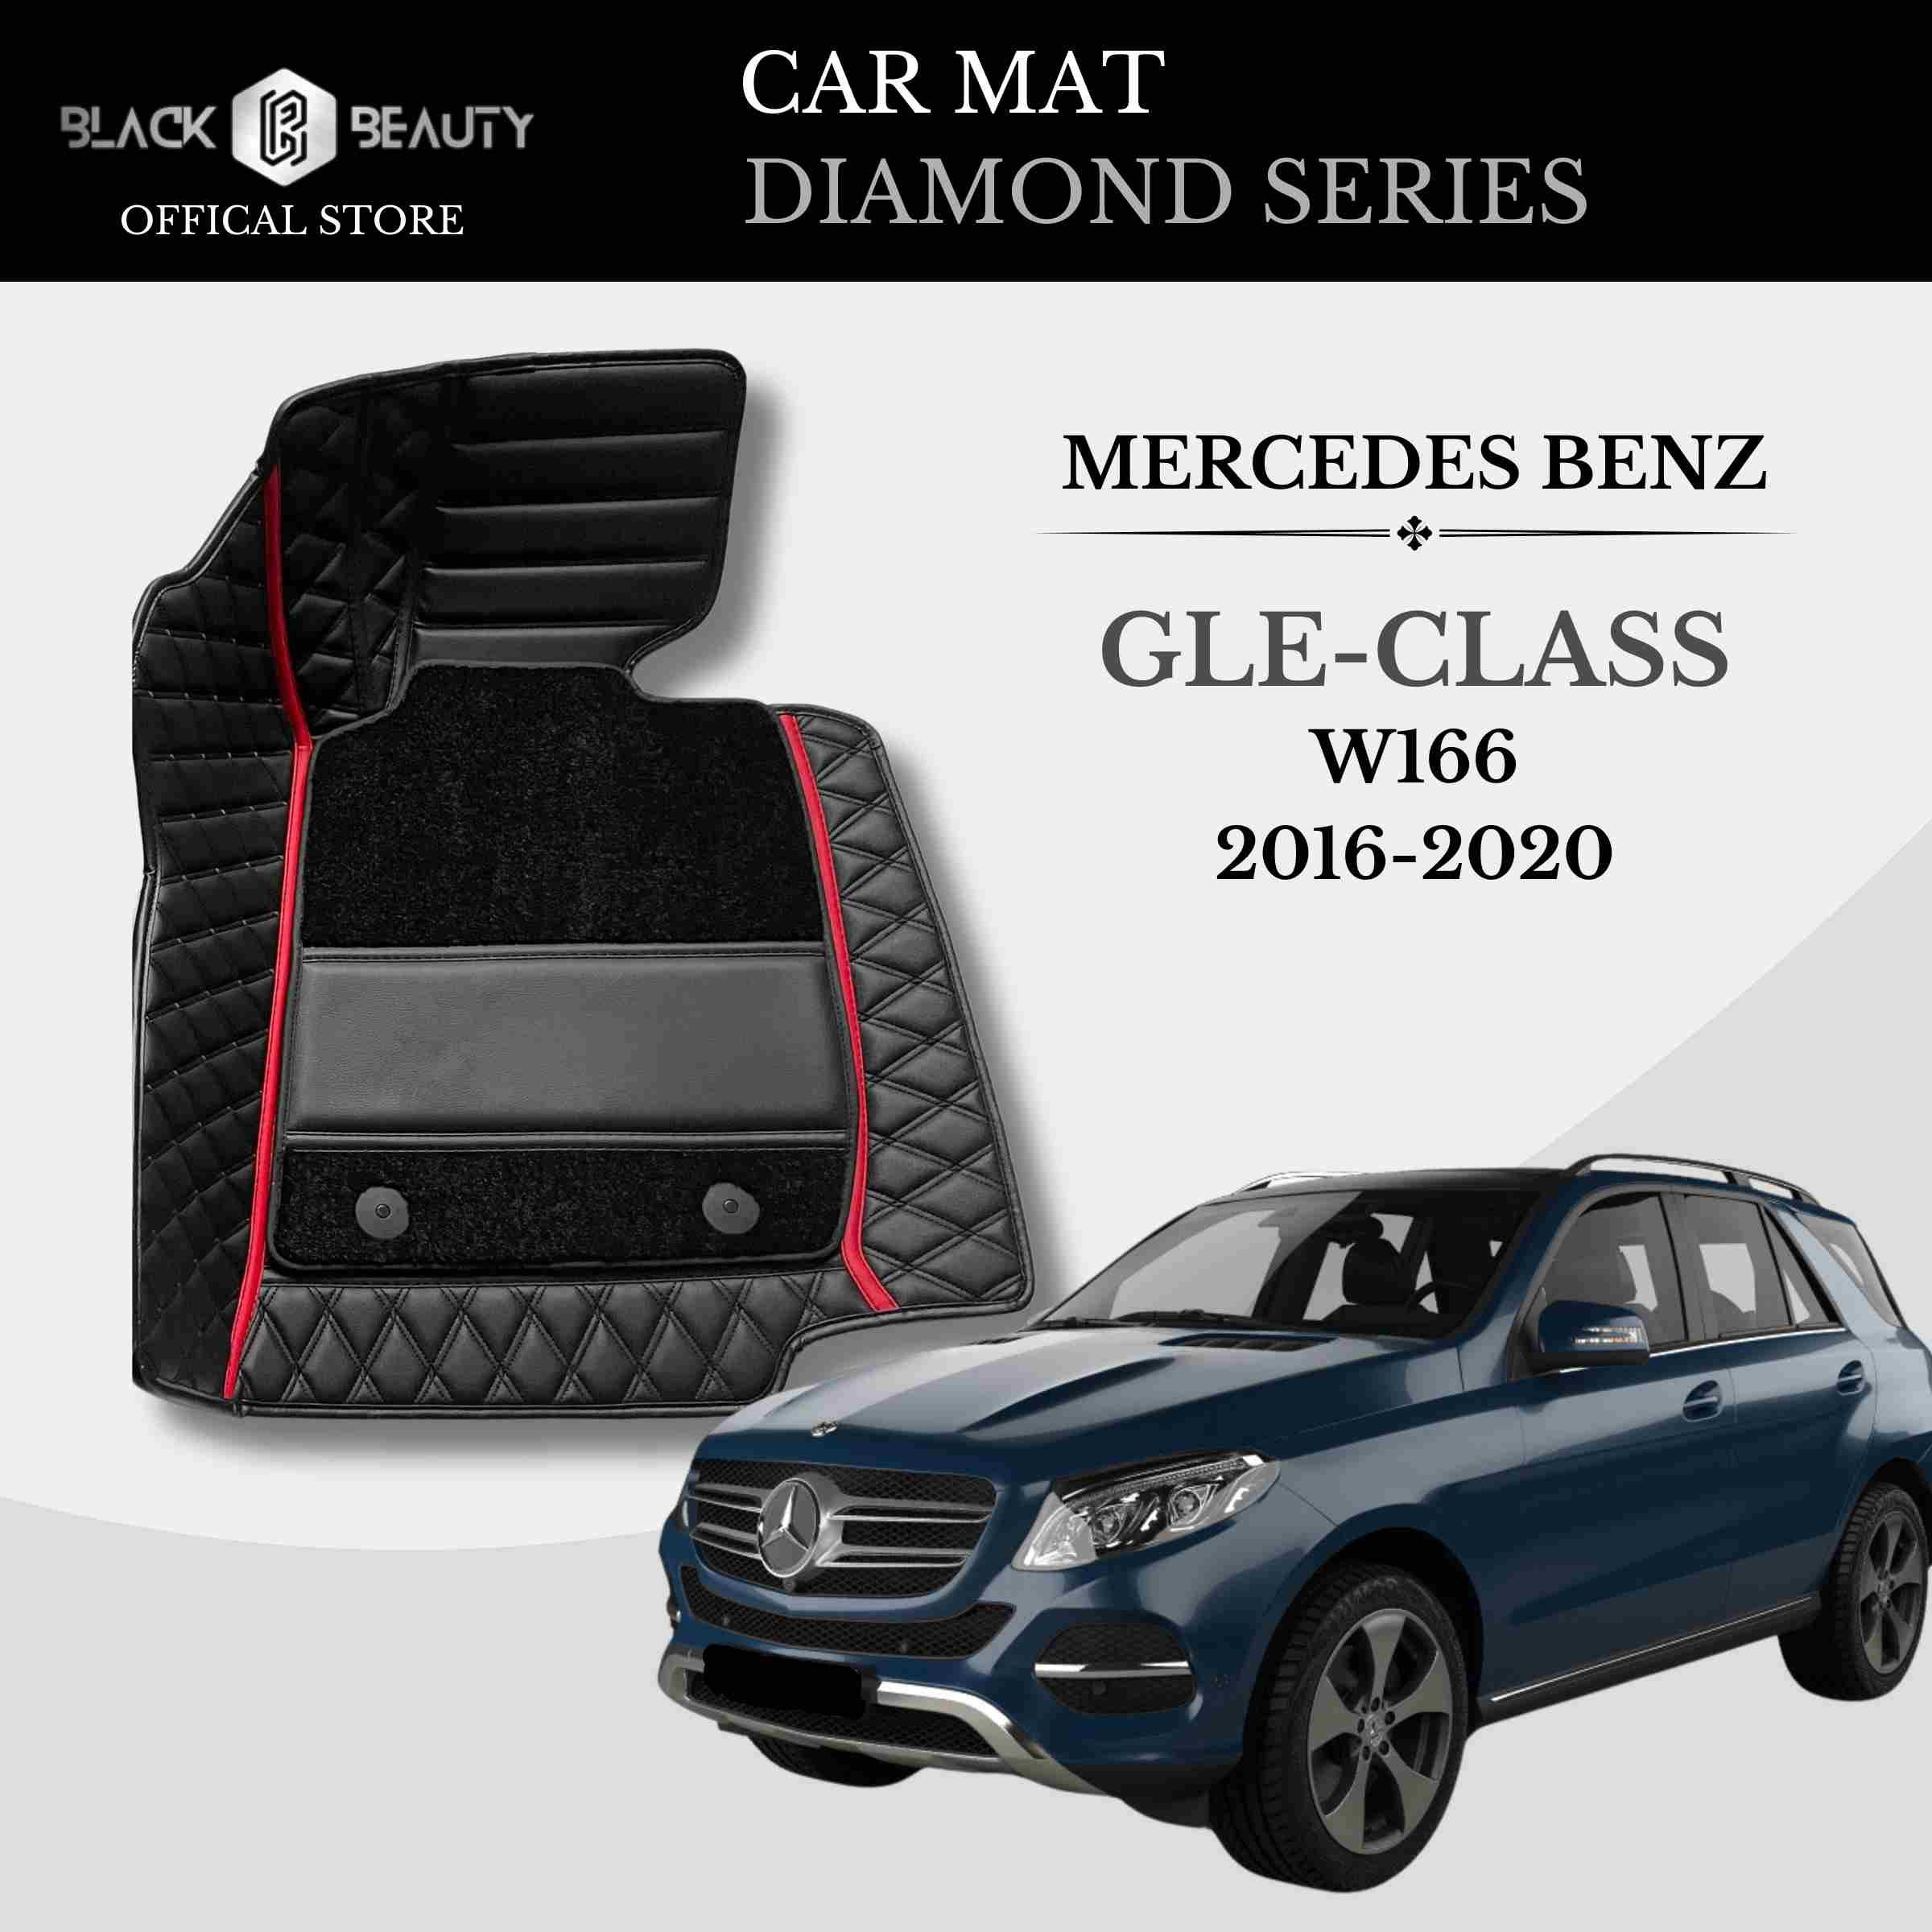 Mercedes Benz GLE-Class W166 (2016-2020) - Diamond Series Car Mat